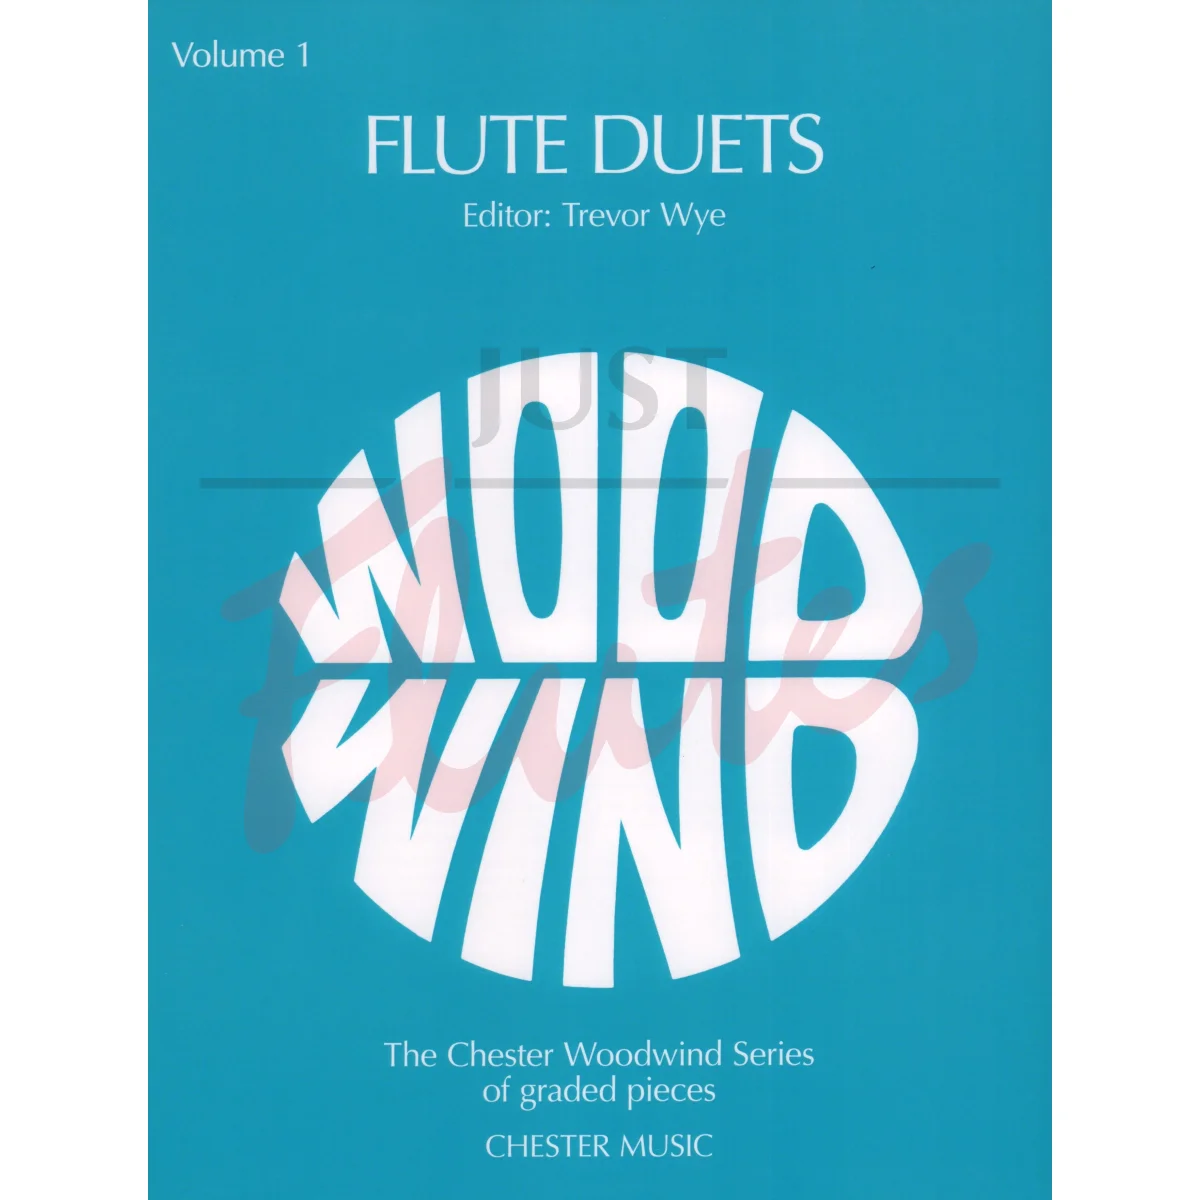 Flute Duets Vol 1